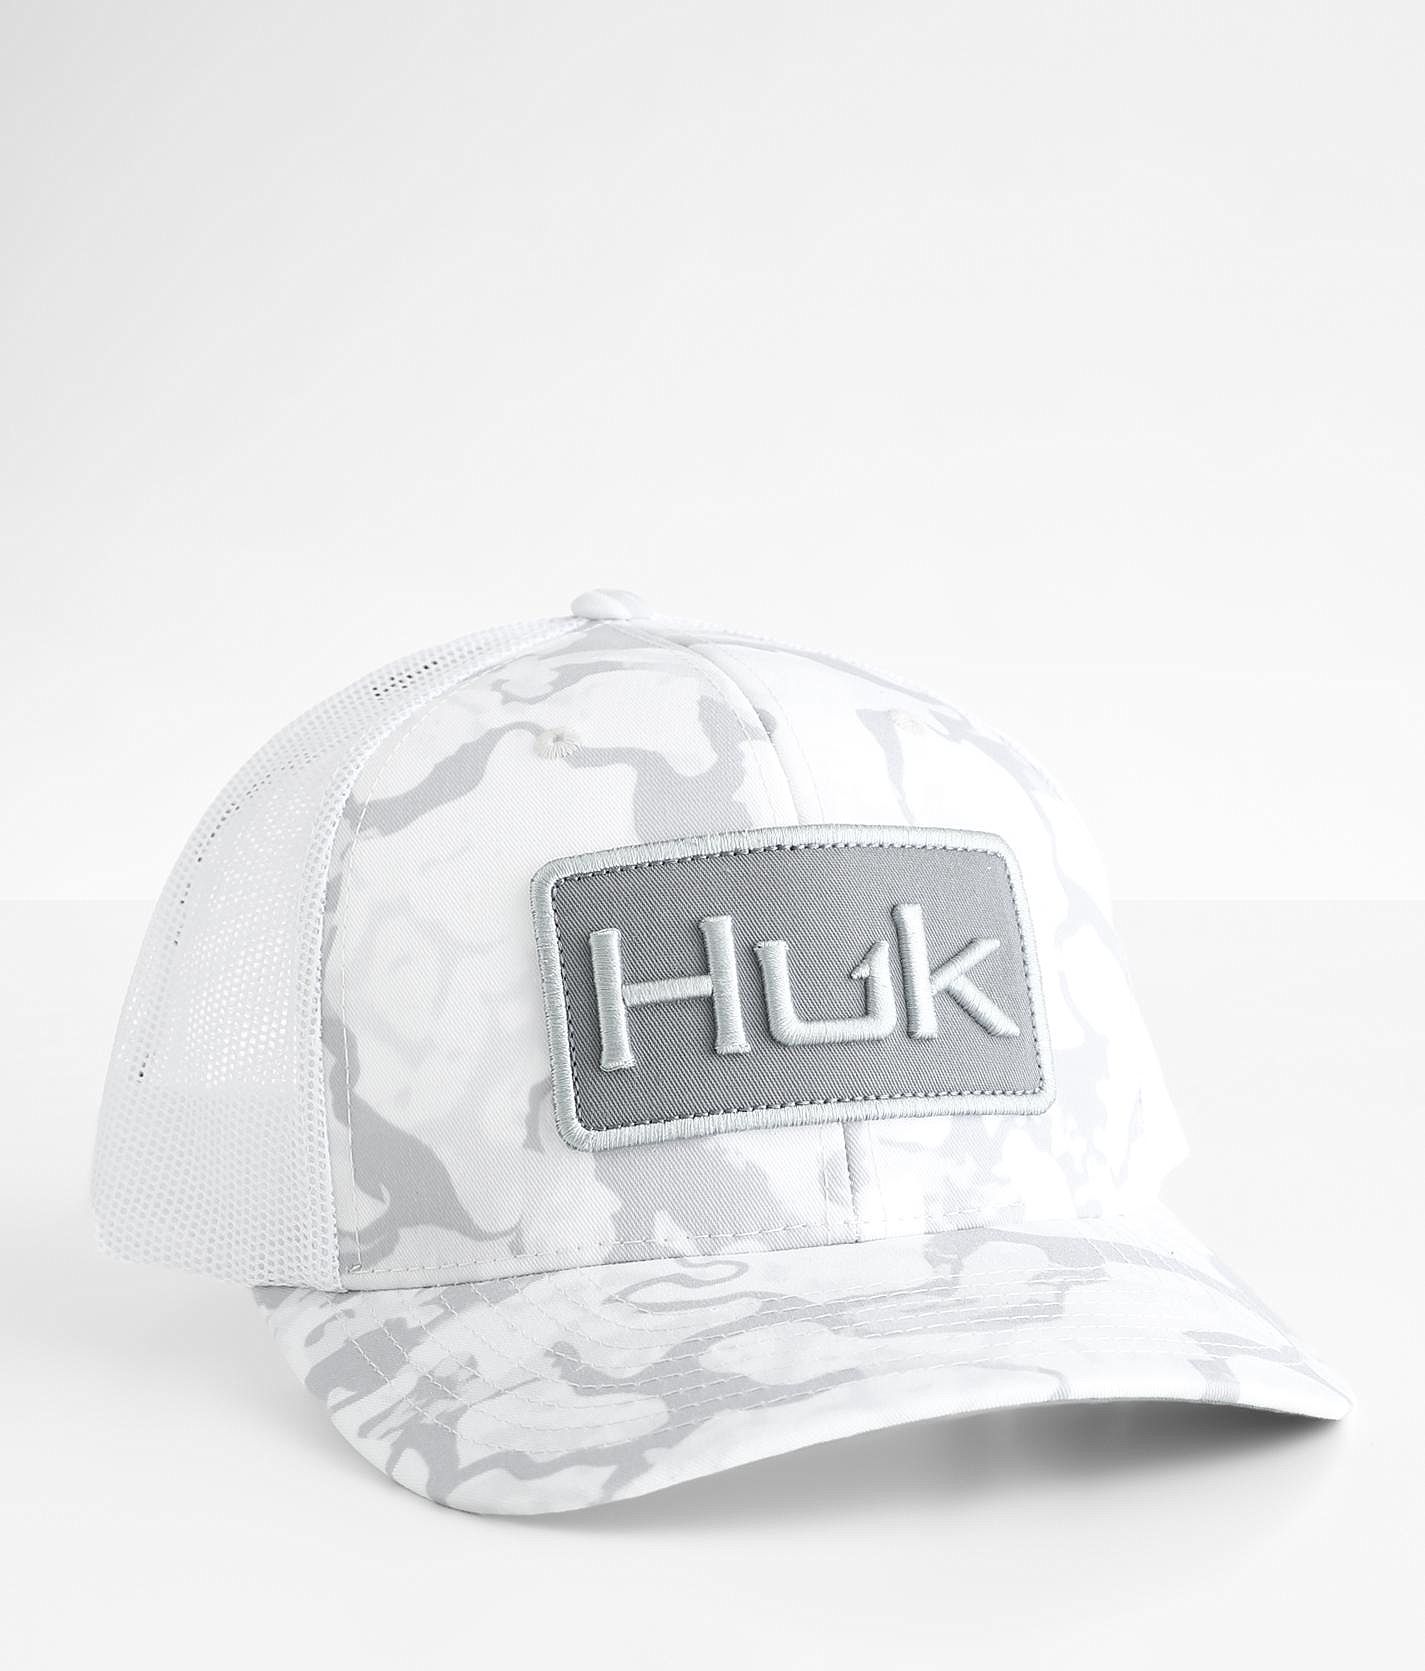 Huk Inside Reef Camo Trucker Hat - Men's Hats in Harbor Mist